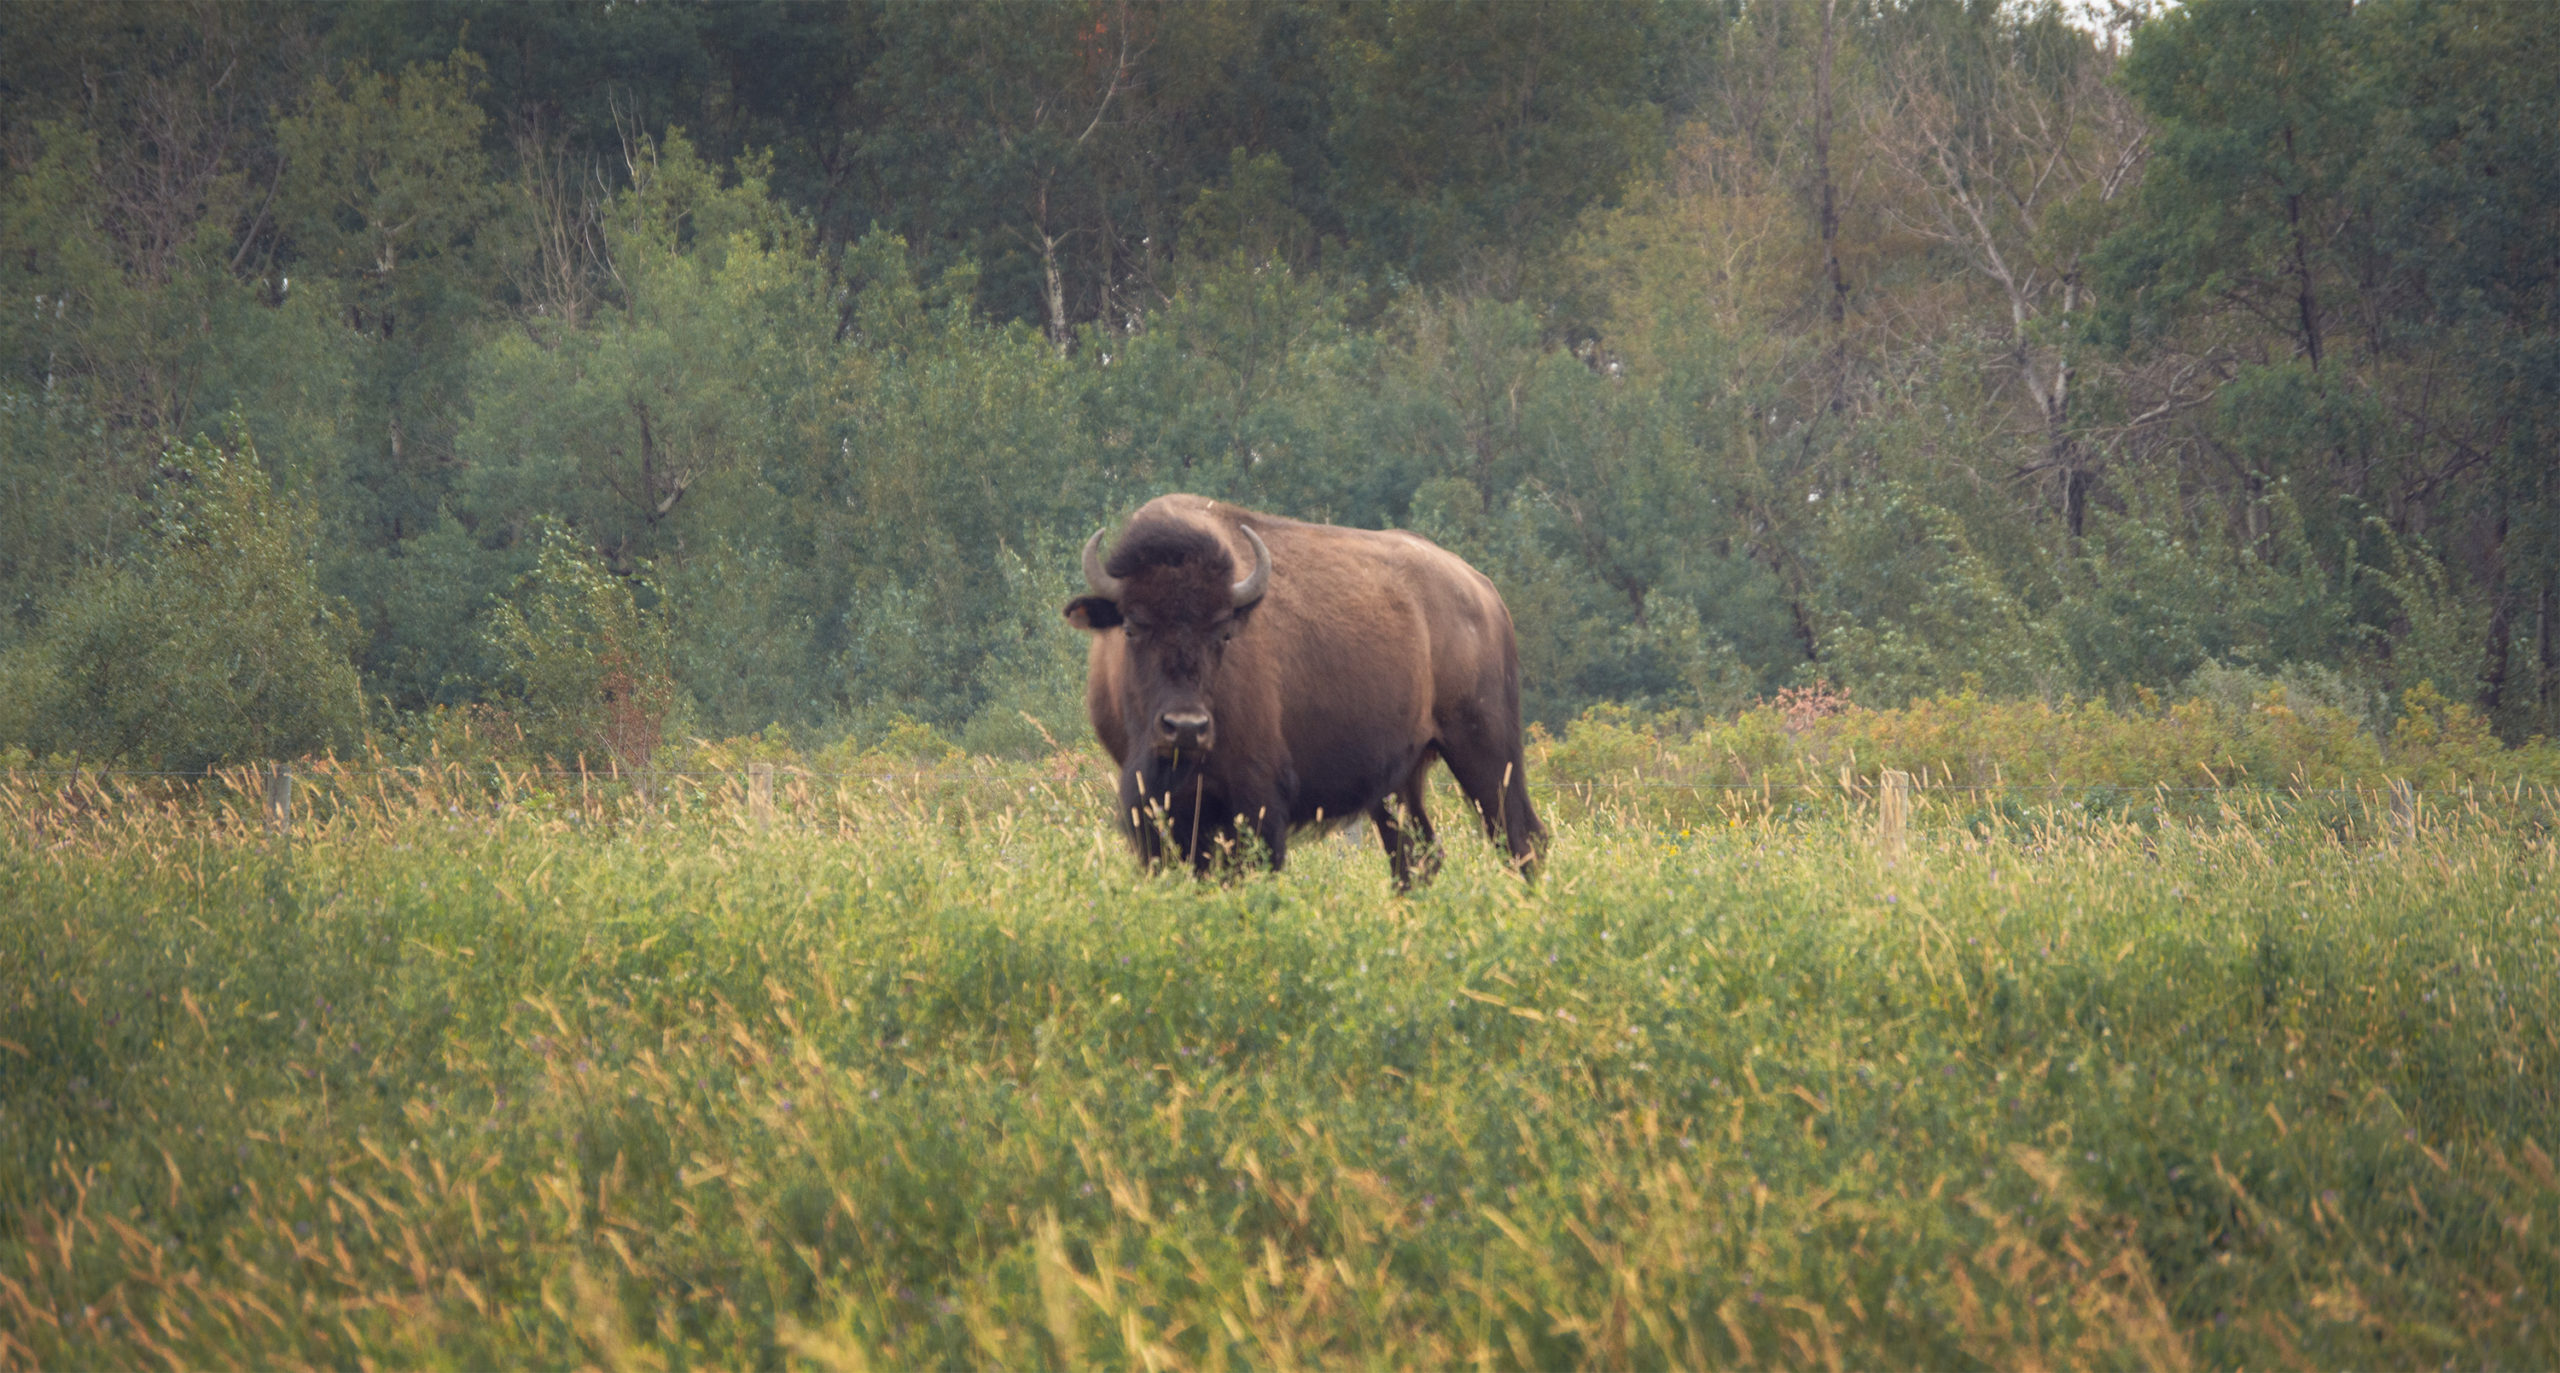 Buffalo in a field.